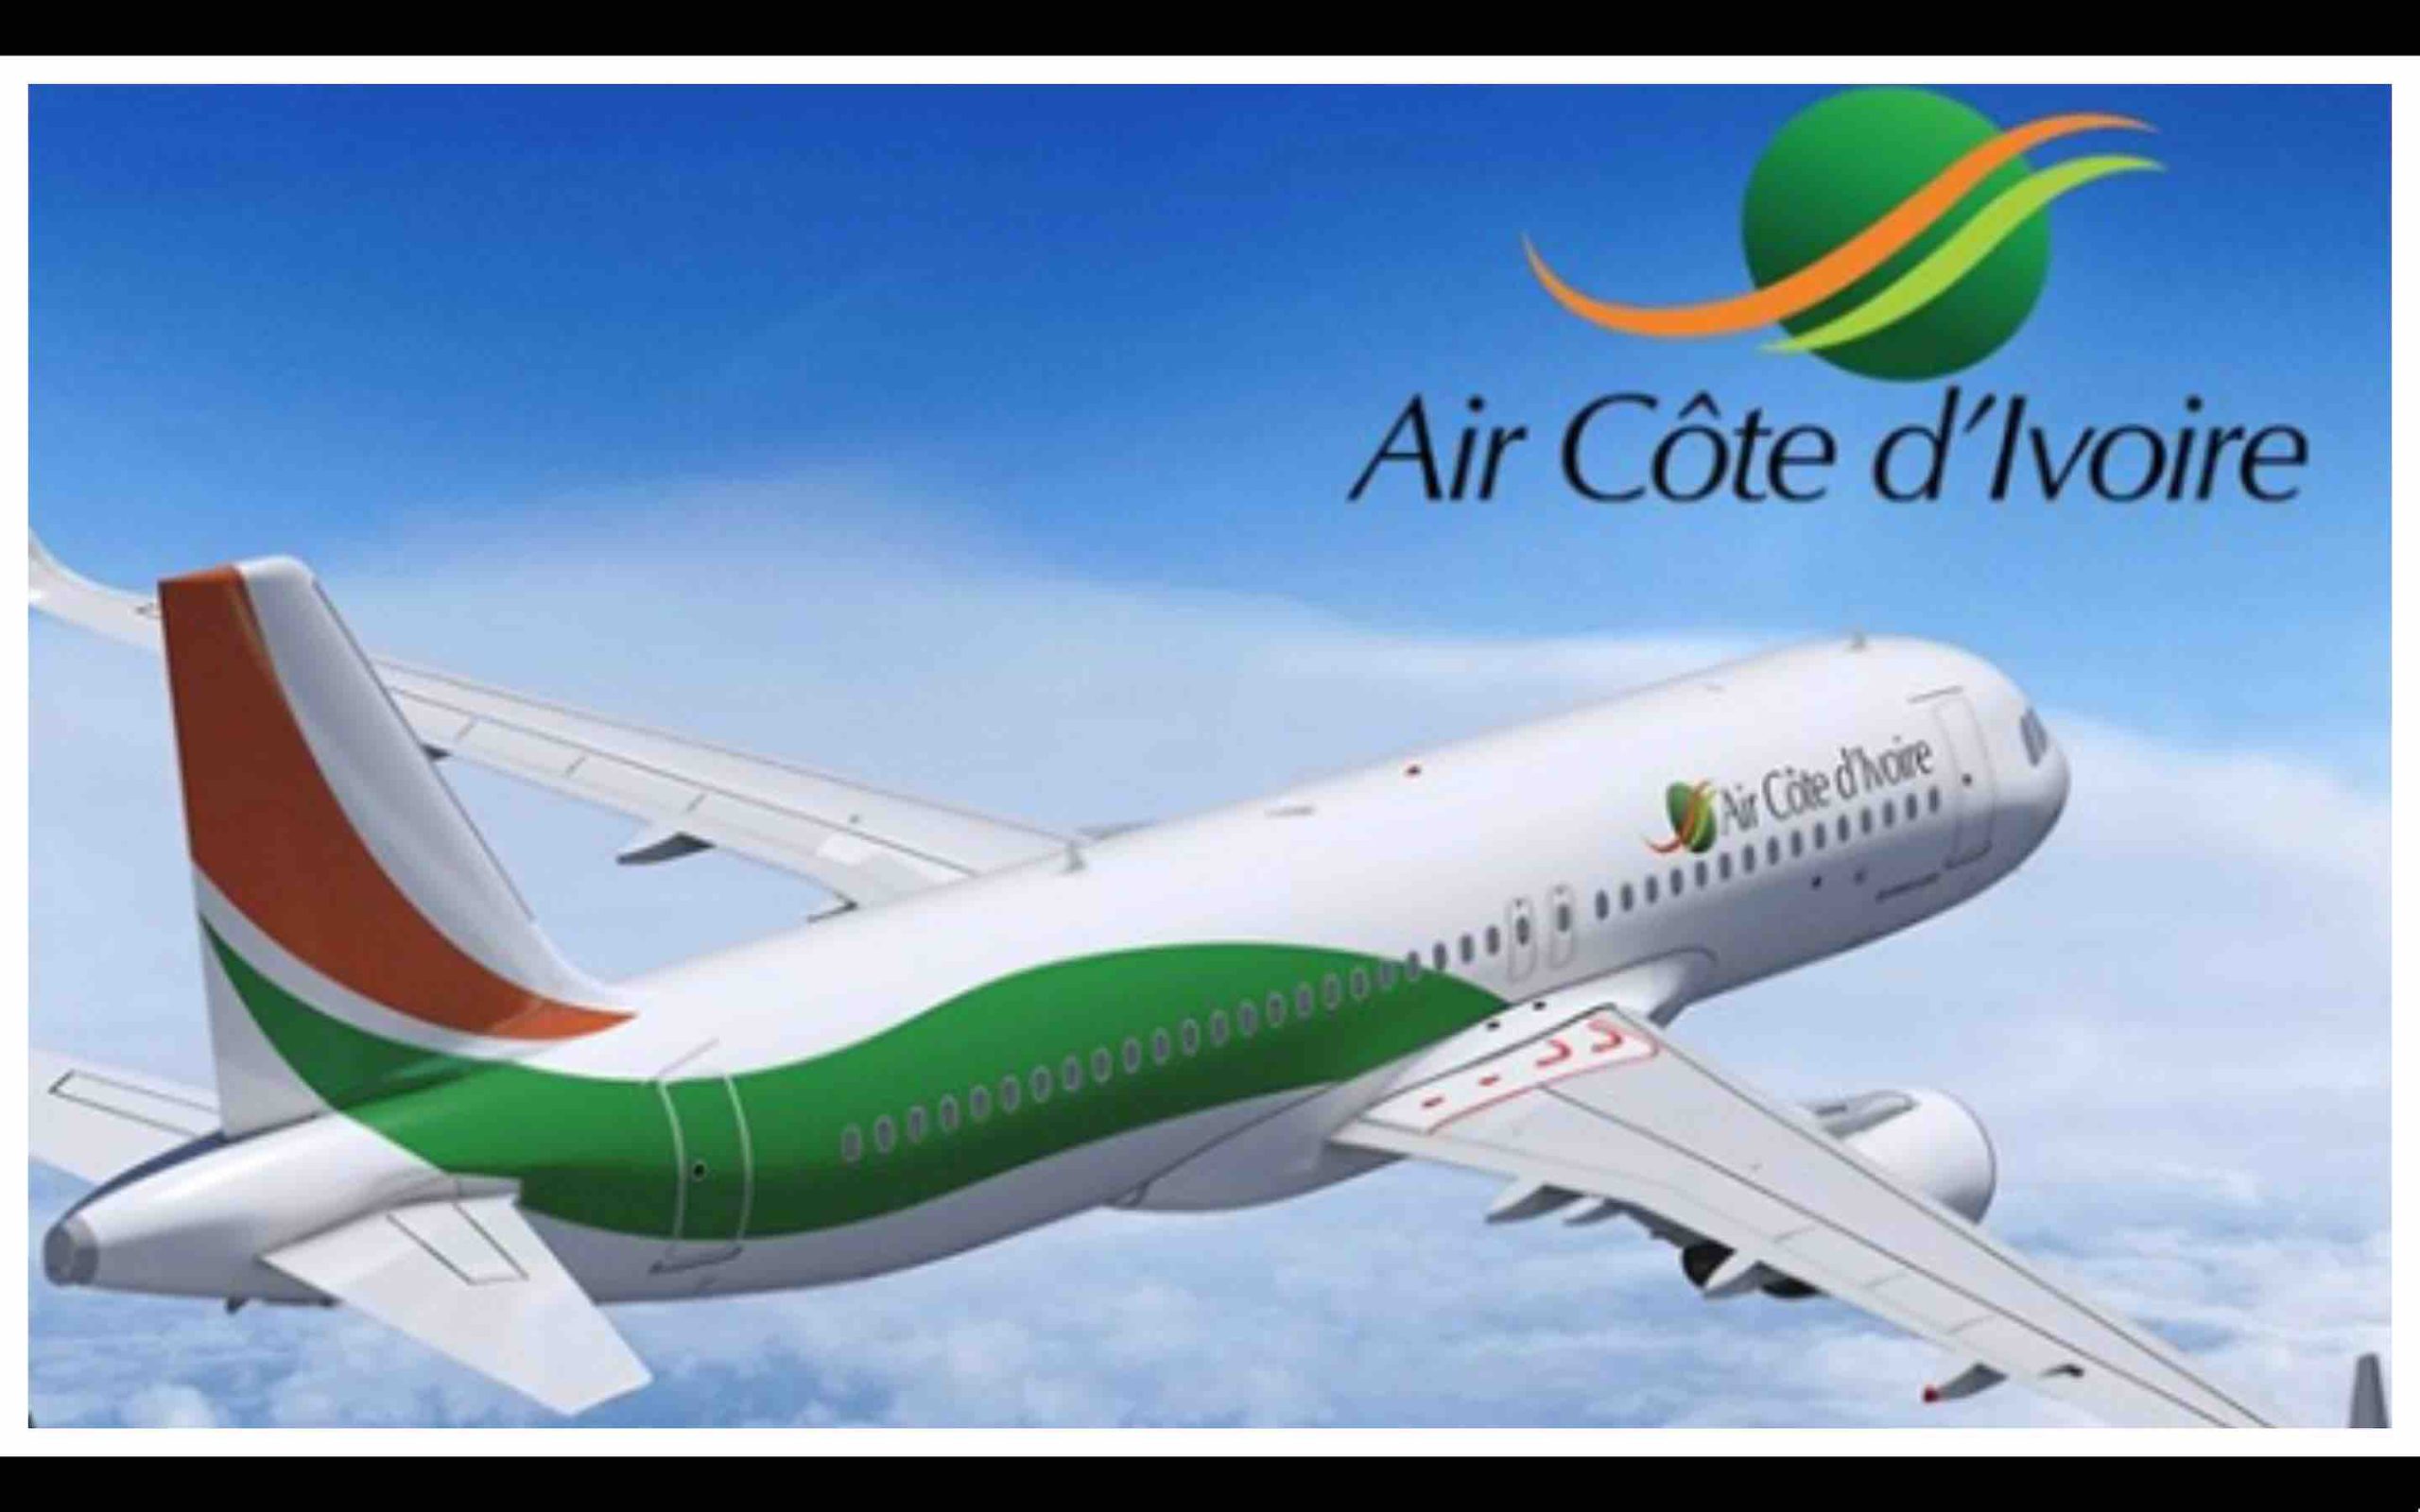 Air Côte d’Ivoire Maroc Morocco